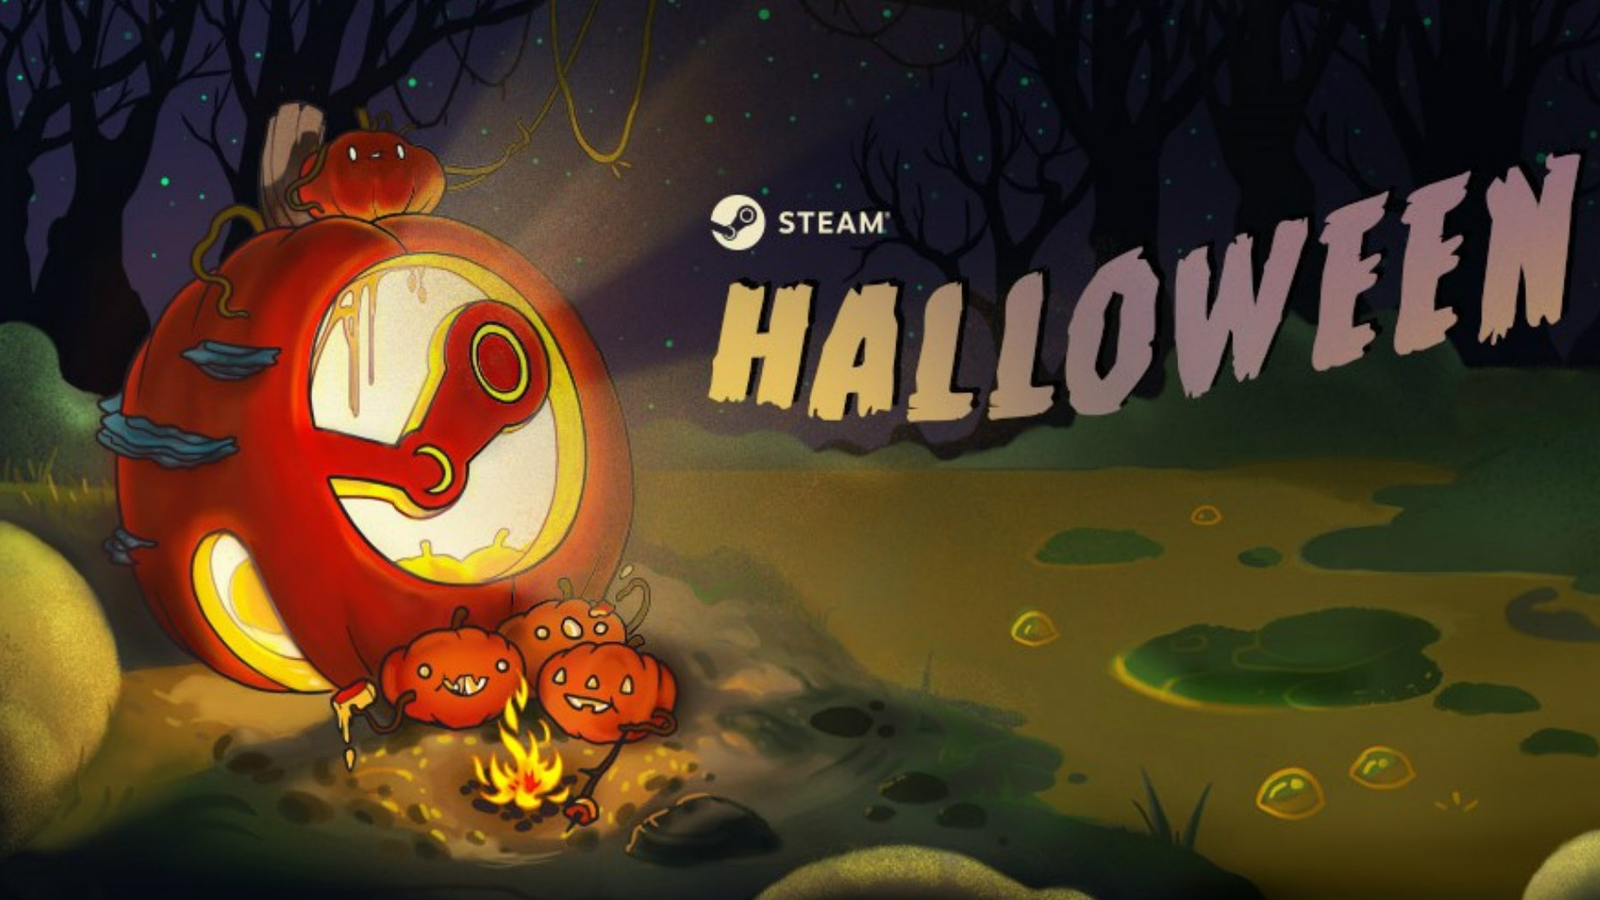 Quando começa a Steam Halloween Sale?